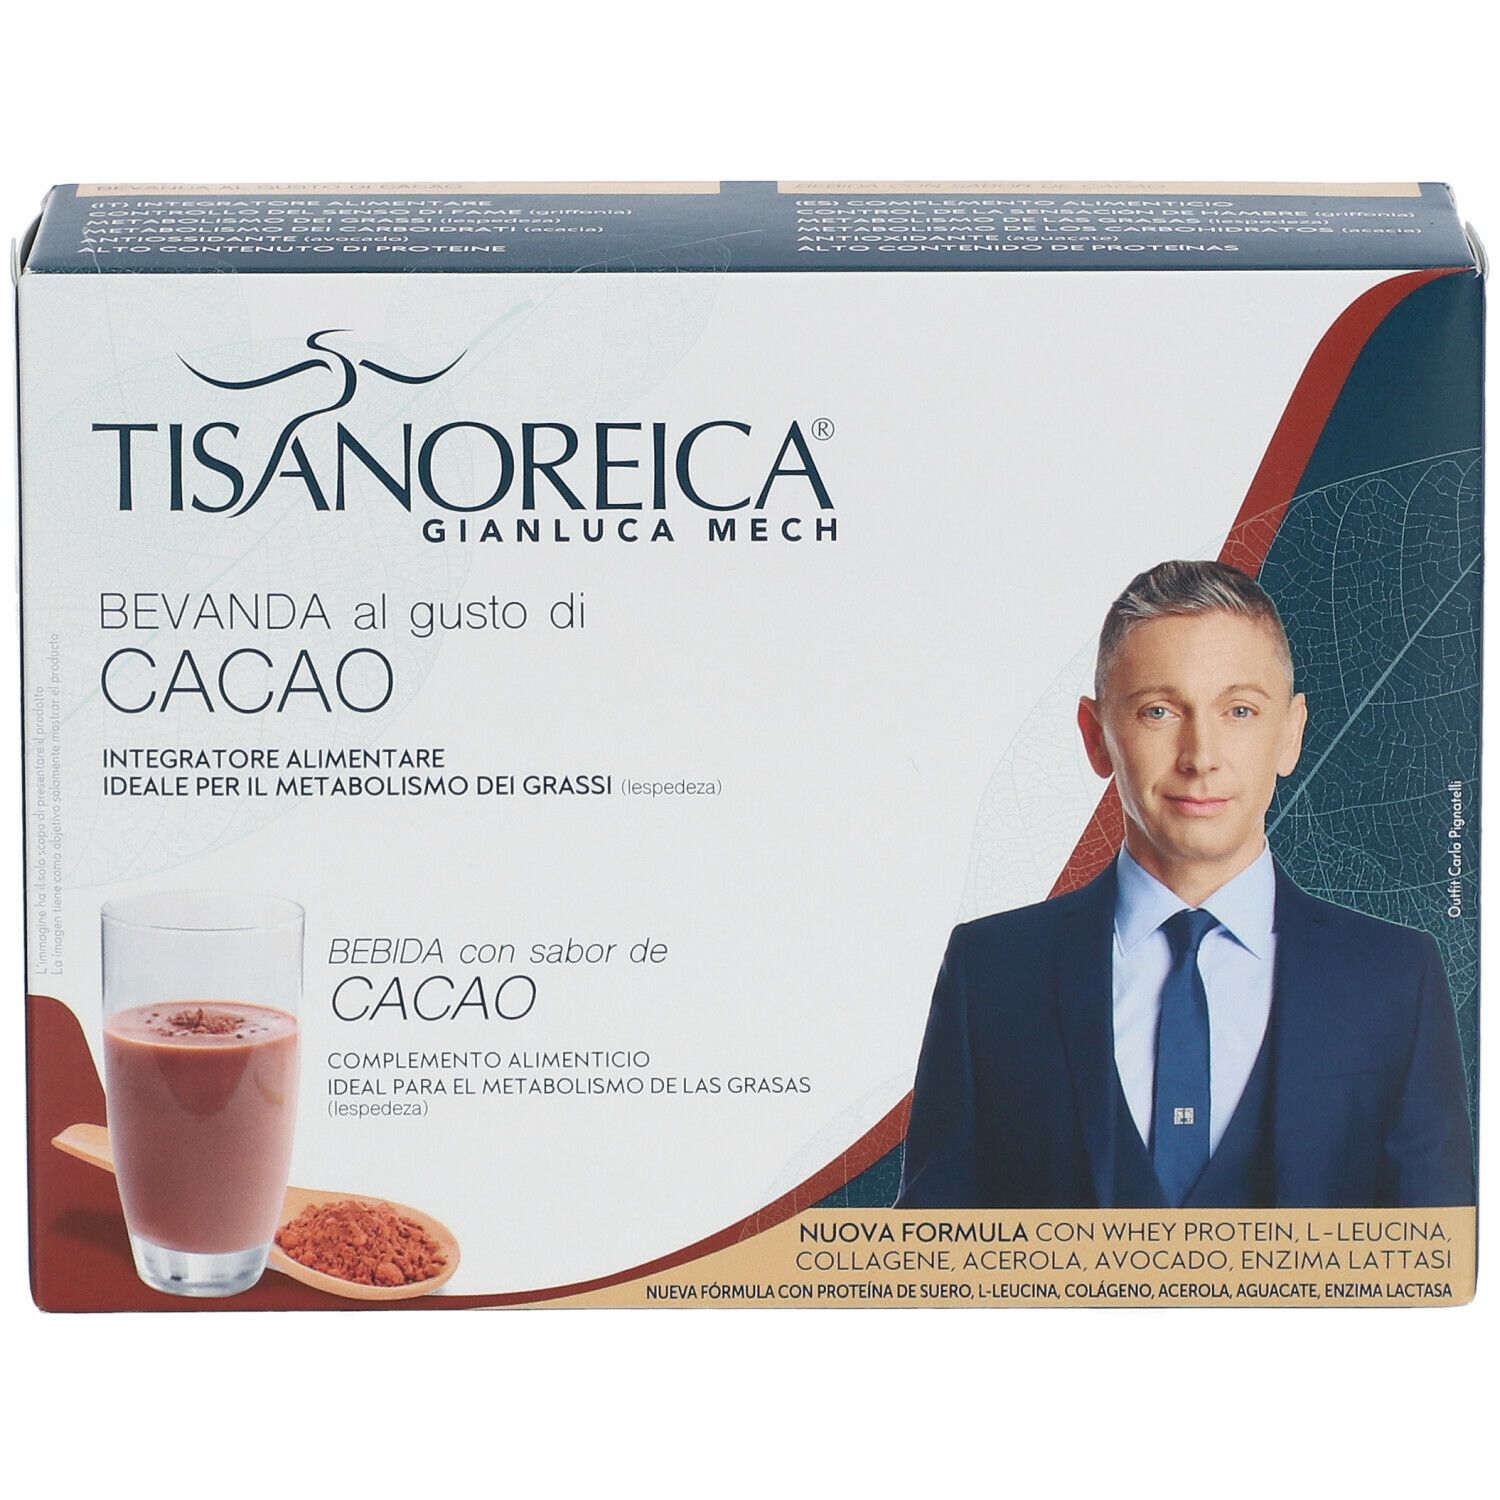 TISANOREICA® Bevanda al gusto di CACAO